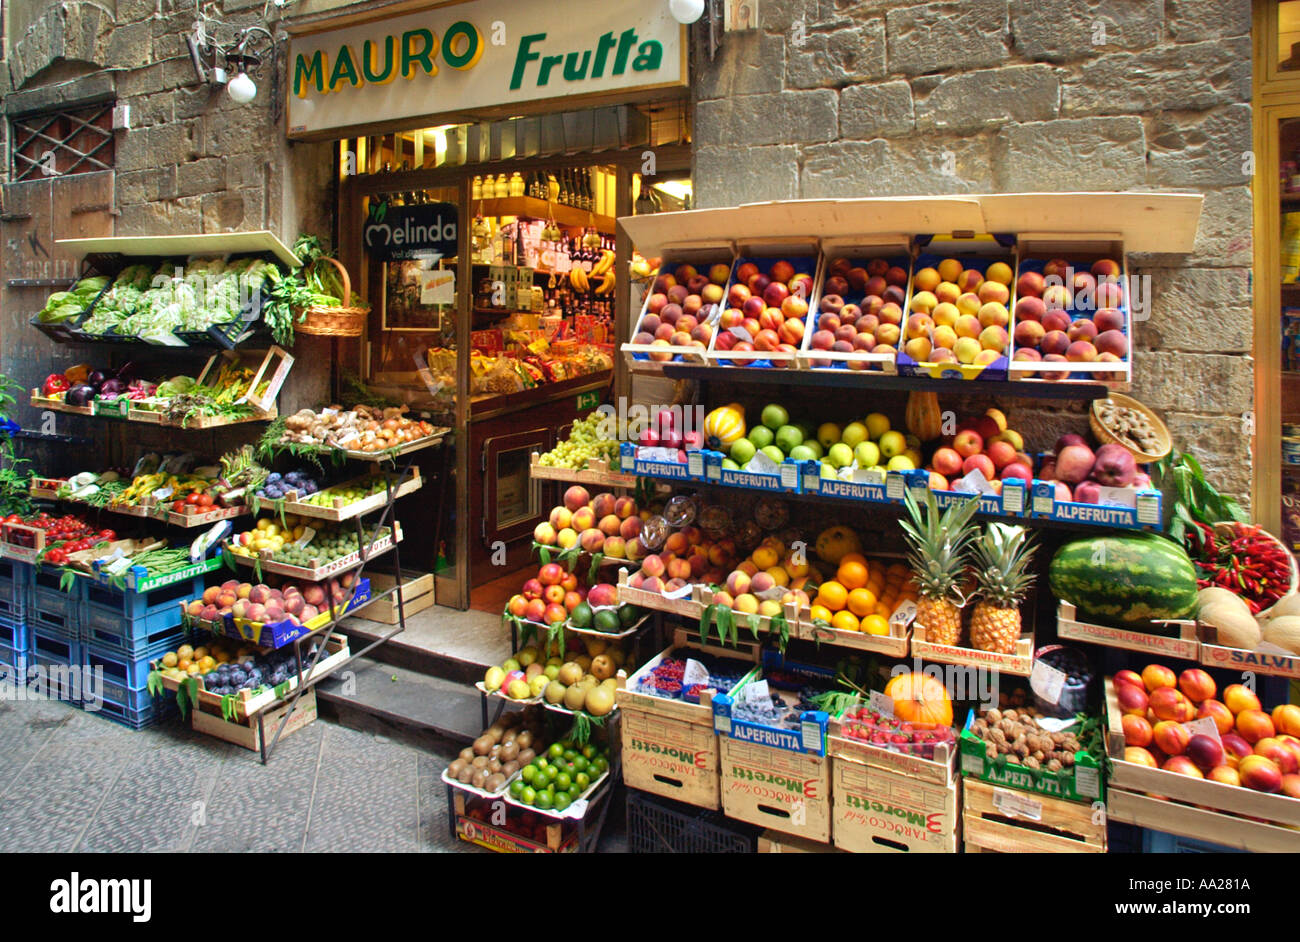 Tradizionale storico negozio per la vendita di frutta e verdura nel centro storico della città di Firenze, Toscana, Italia Foto Stock